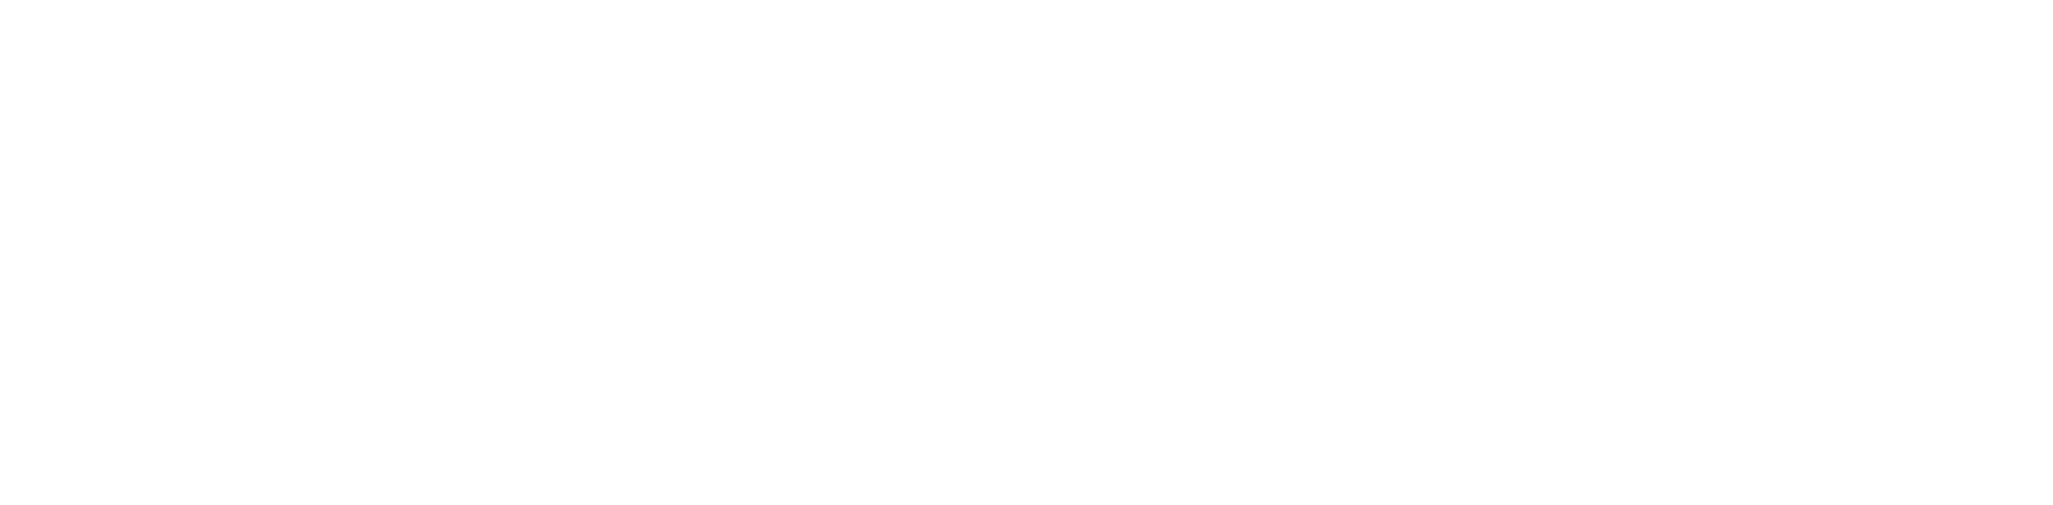 PITO kattopollari logo_WHITE